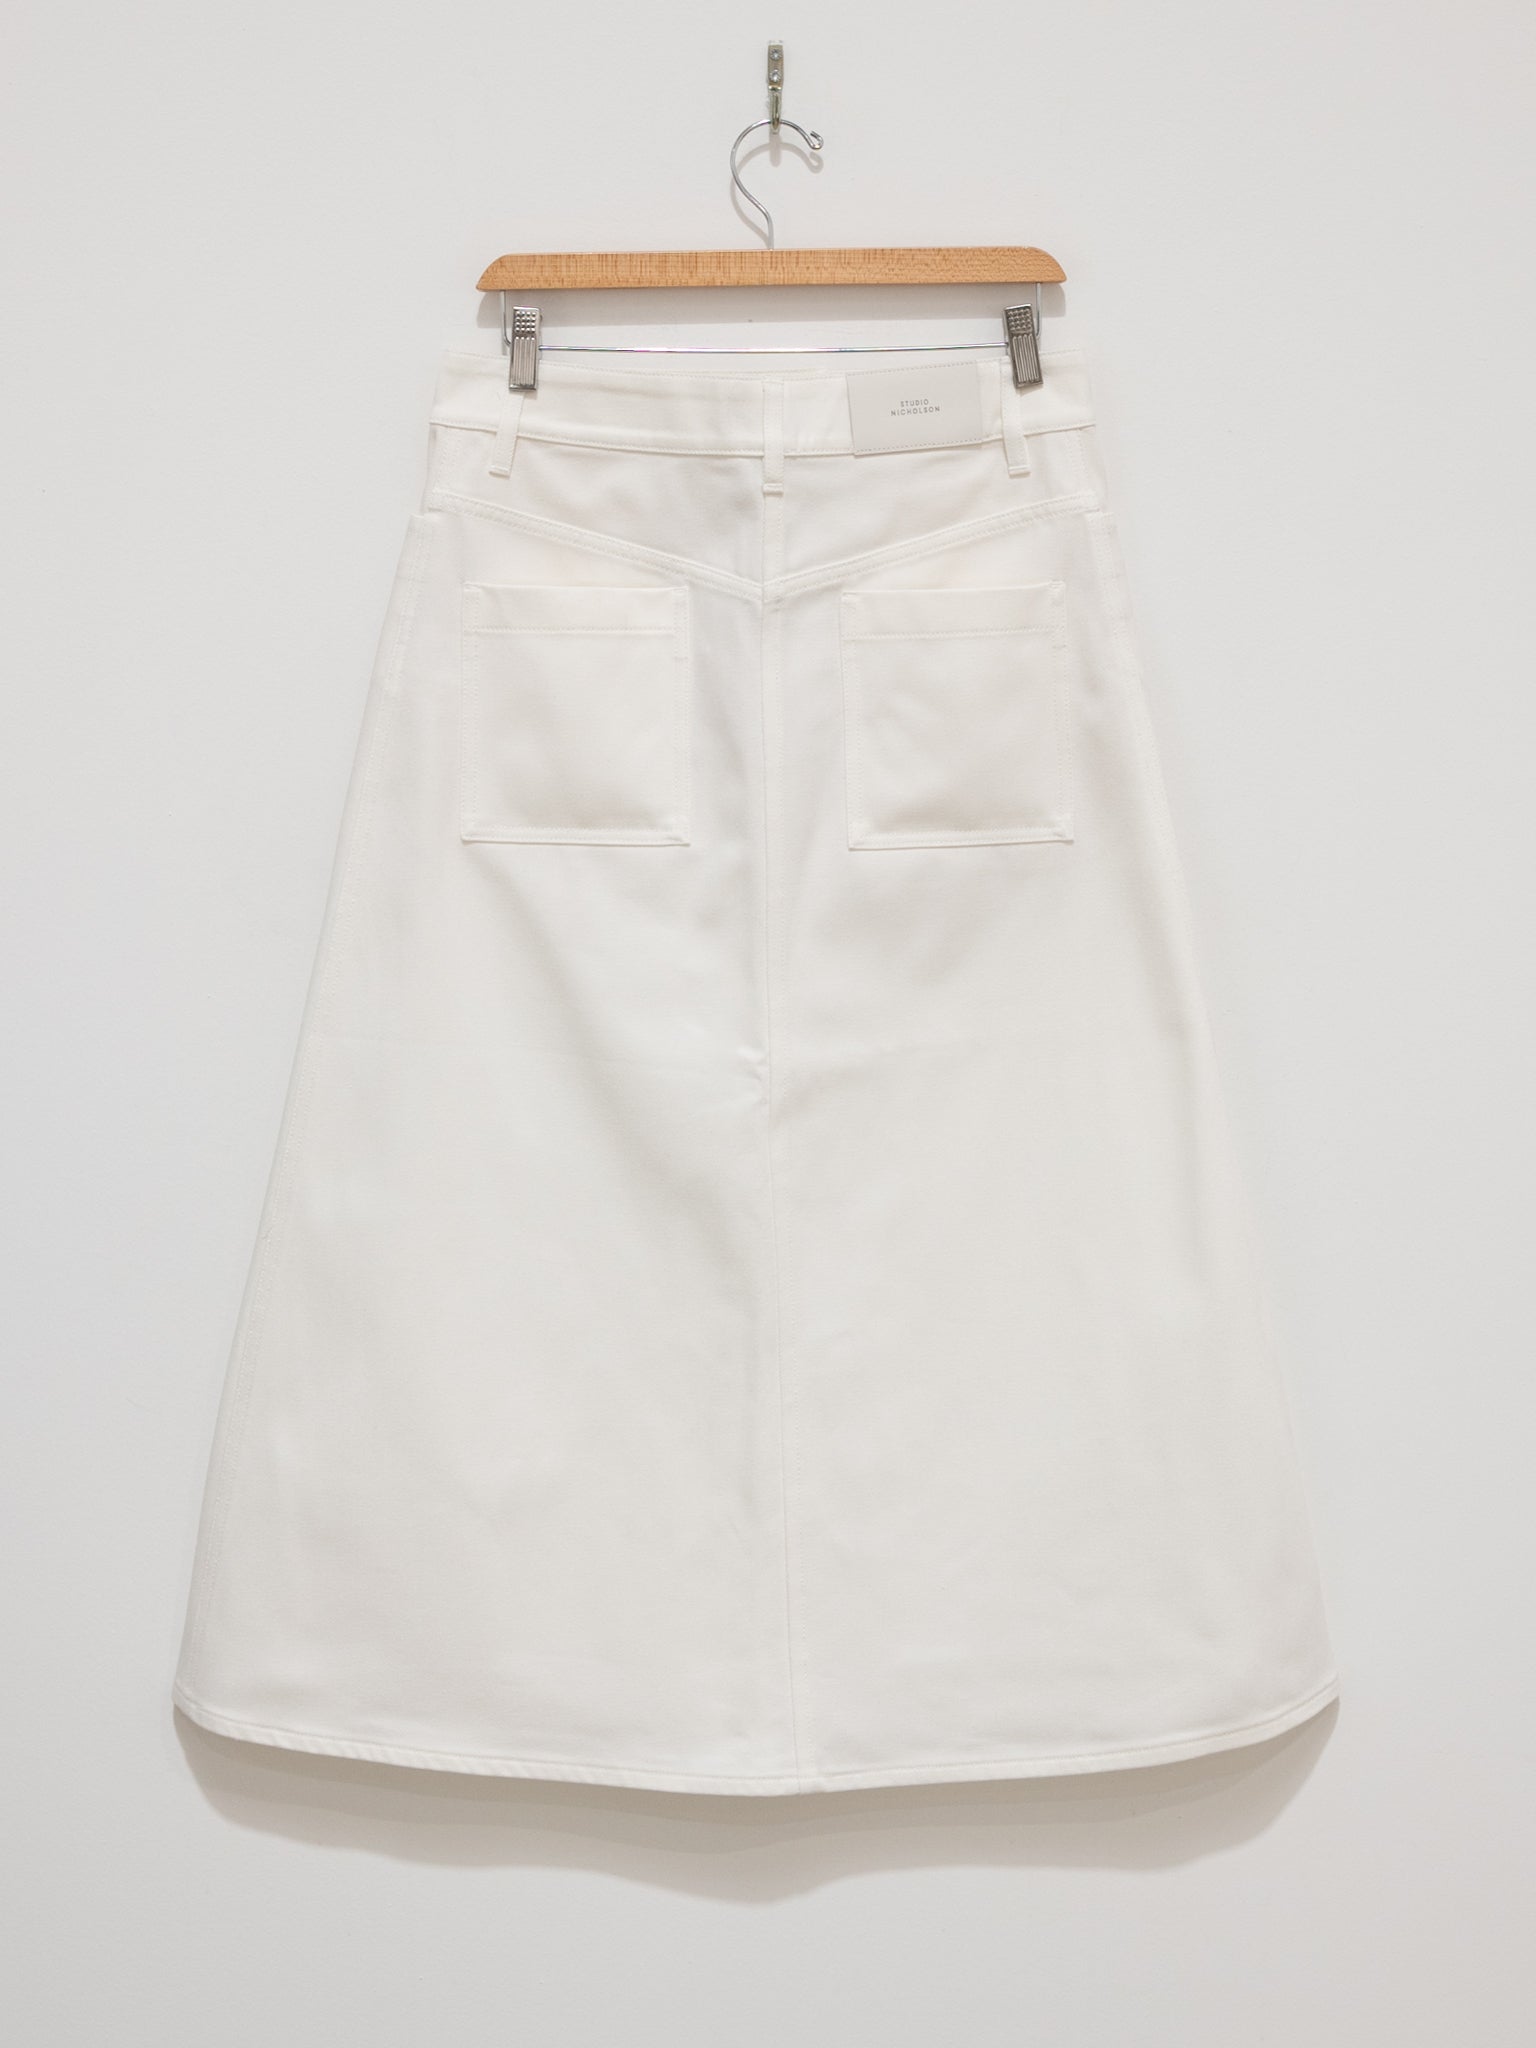 Namu Shop - Studio Nicholson Baringo A-Line Denim Skirt - White